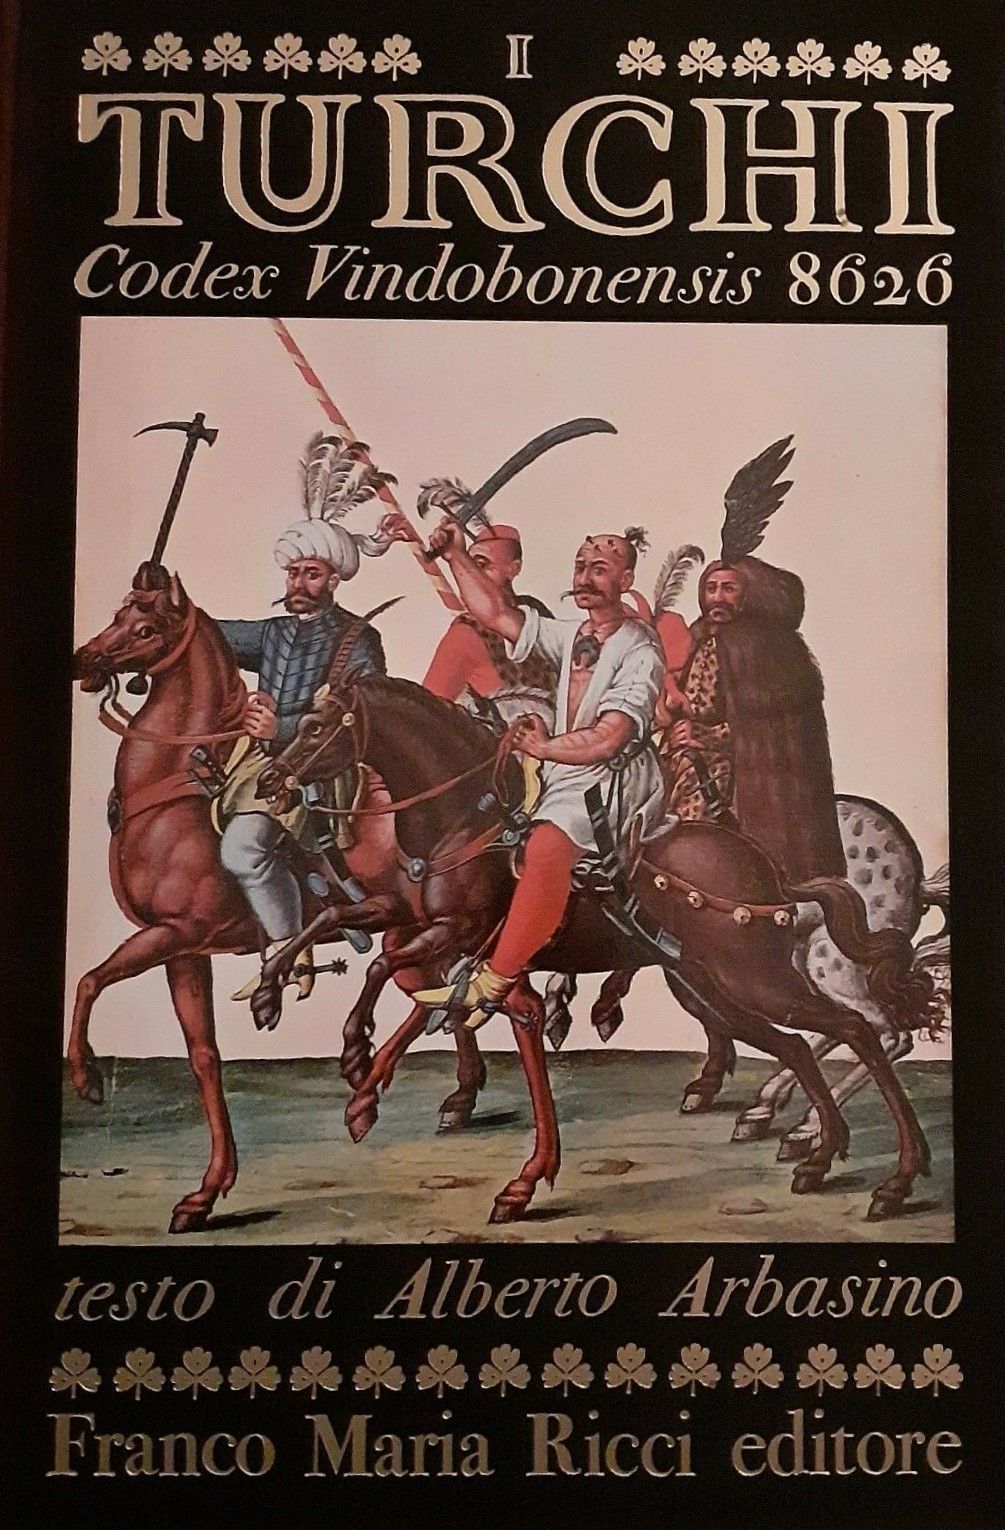 “I turchi: Codex Vindobonensis 8626” di Franco Maria Ricci in asta su eBay